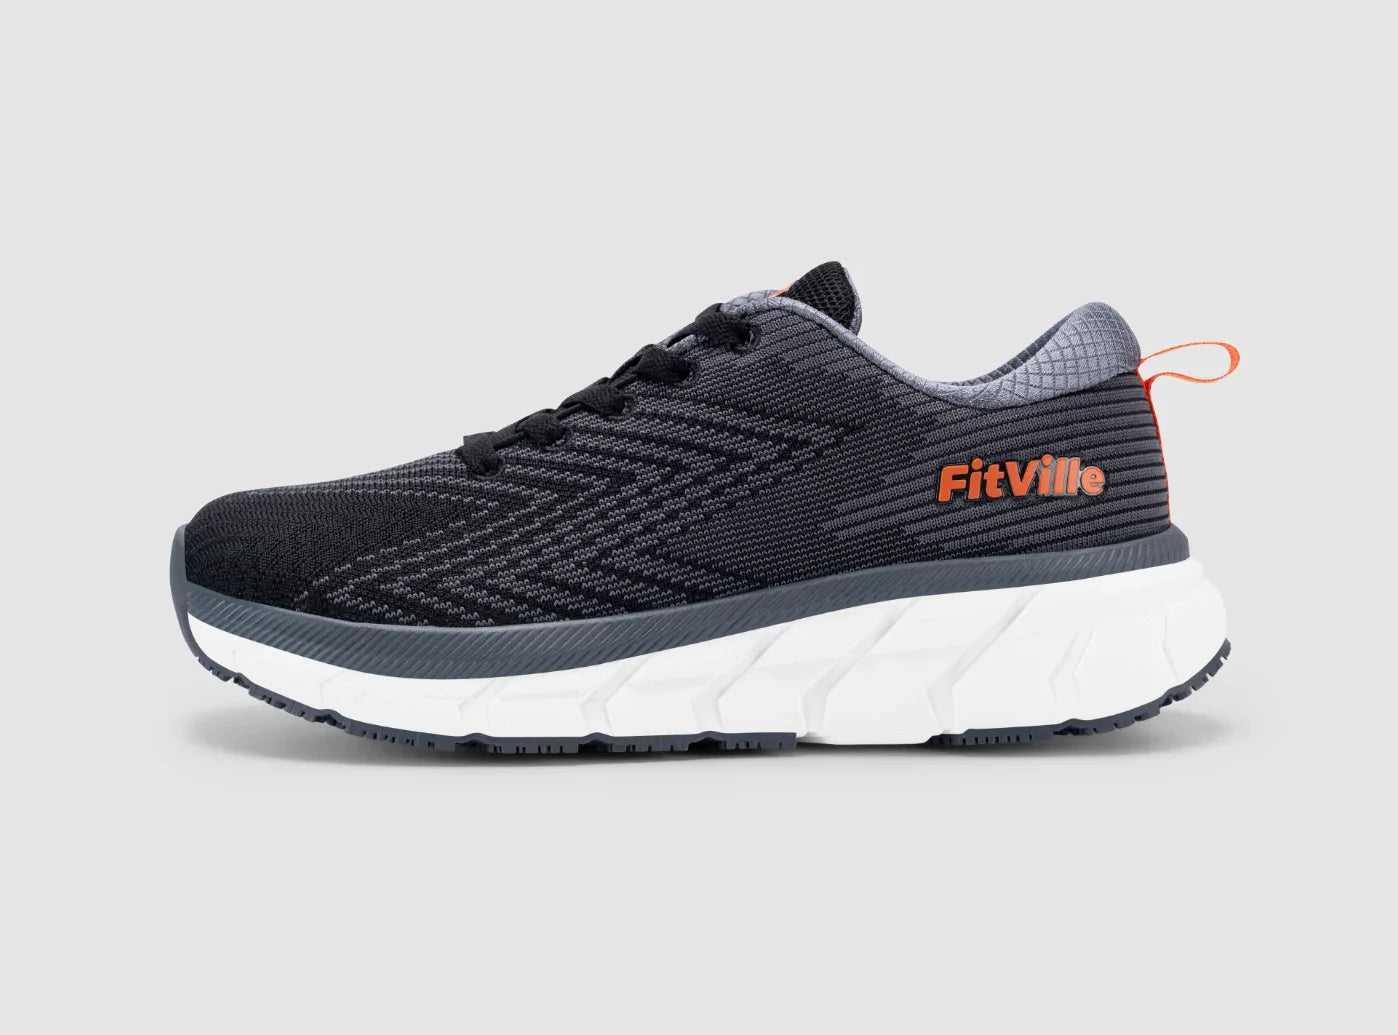 FitVille Men's FlowCore Running Shoes V1-0